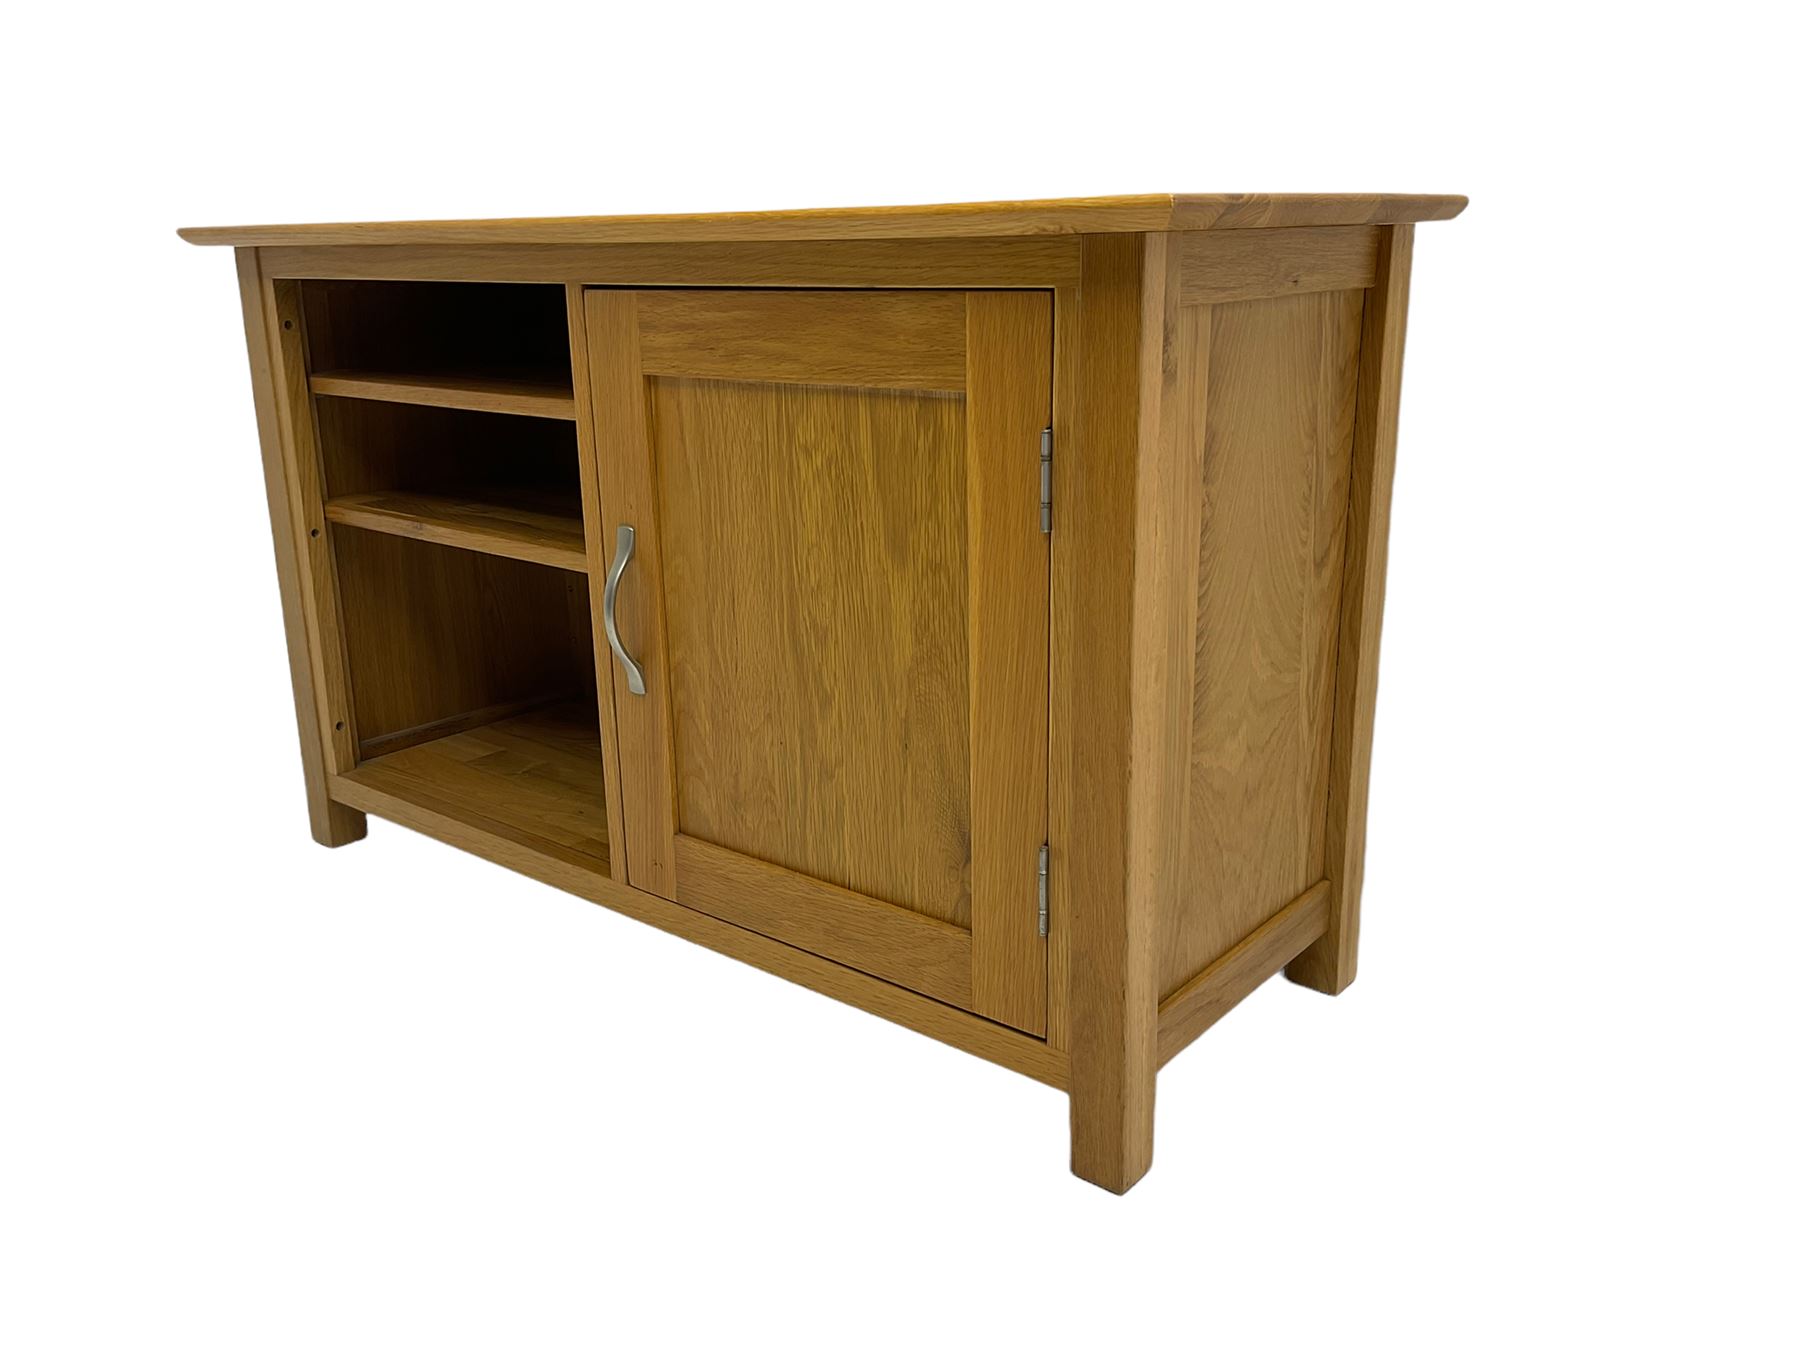 Light oak television cabinet - Image 3 of 7